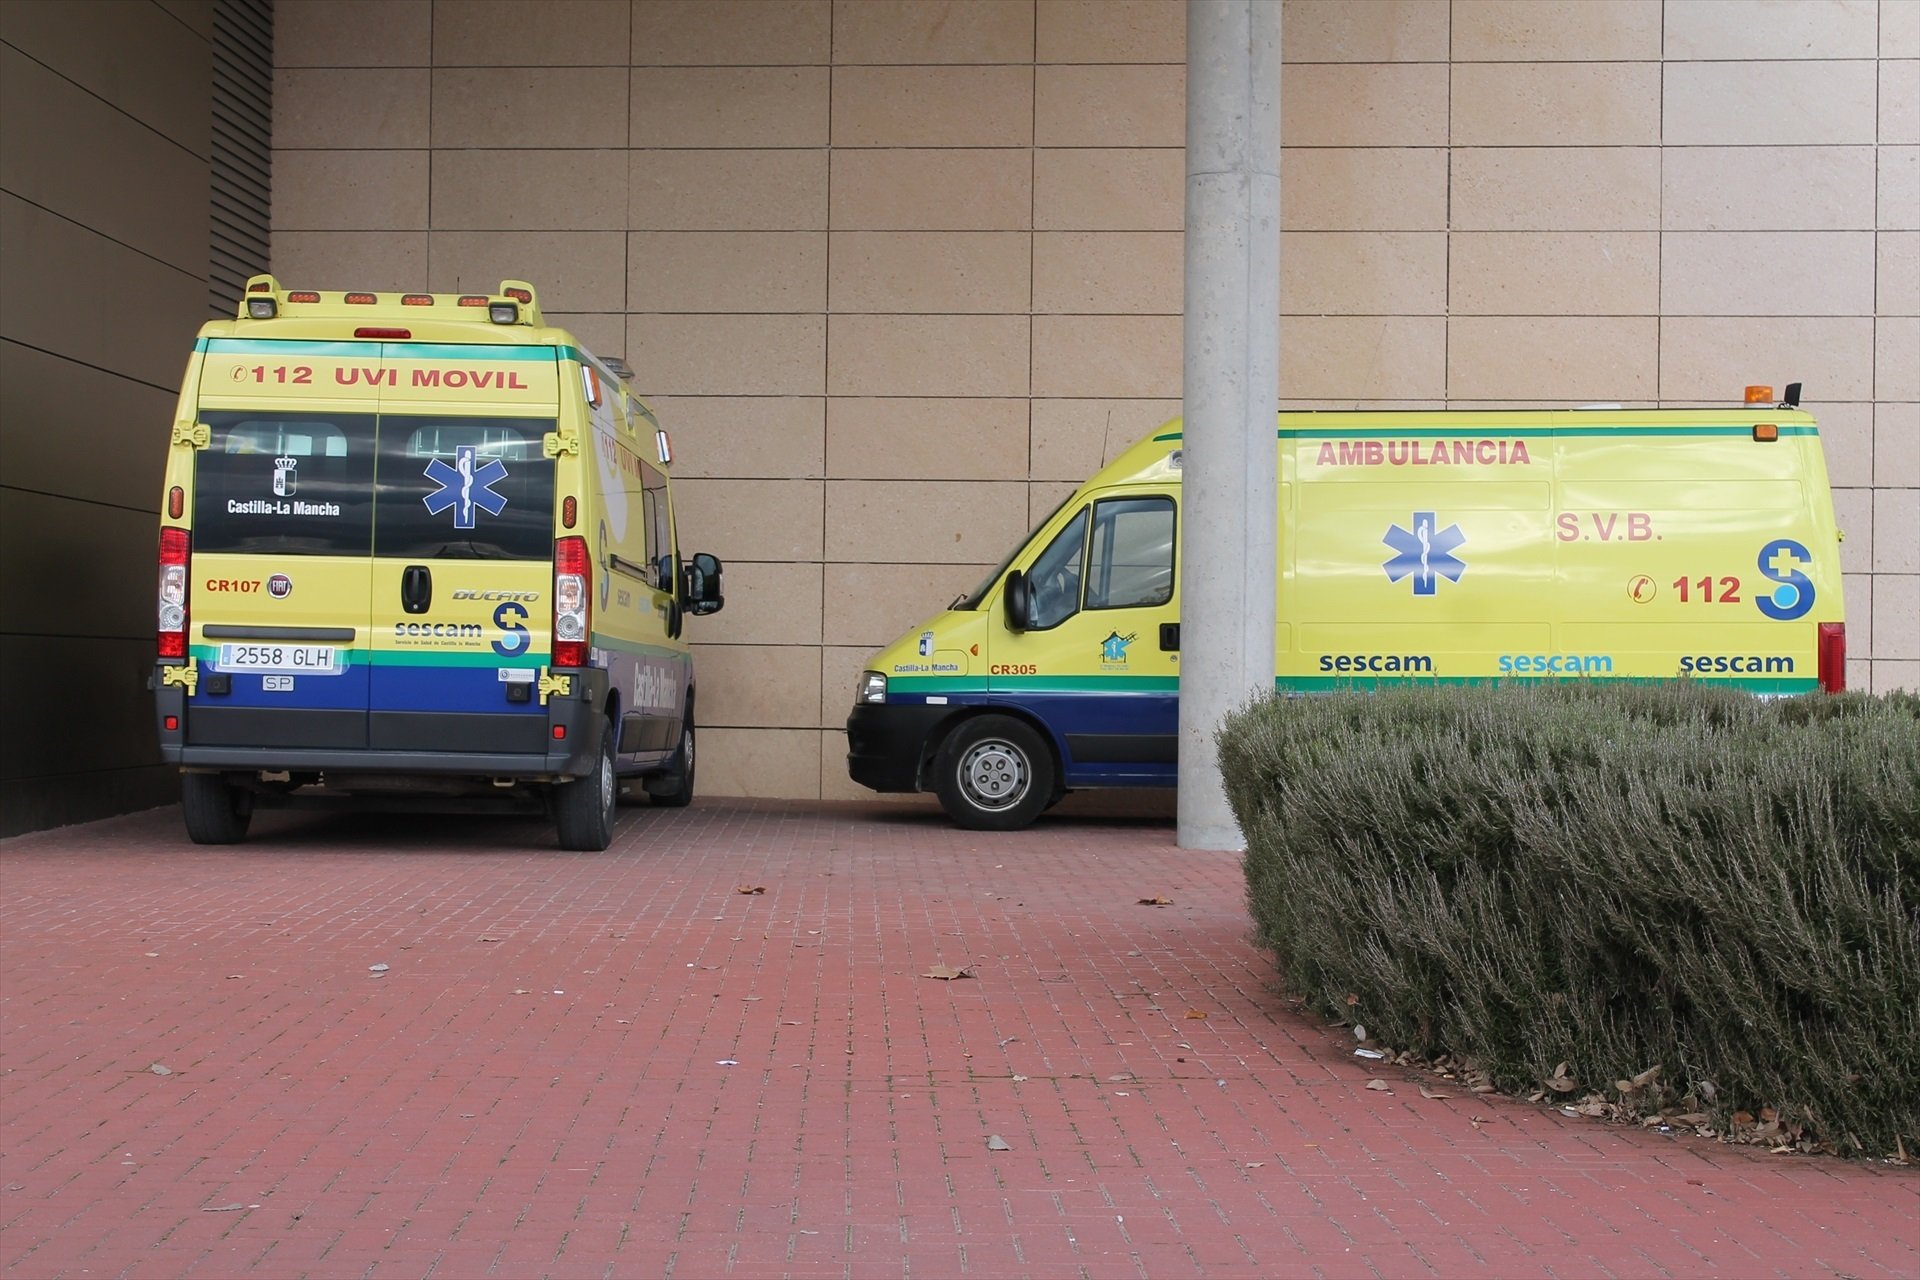 Unes ambulàncies del servei d'emergències mèdiques de Castella-la Manxa en una imatge d'arxiu / EUROPA PRESS